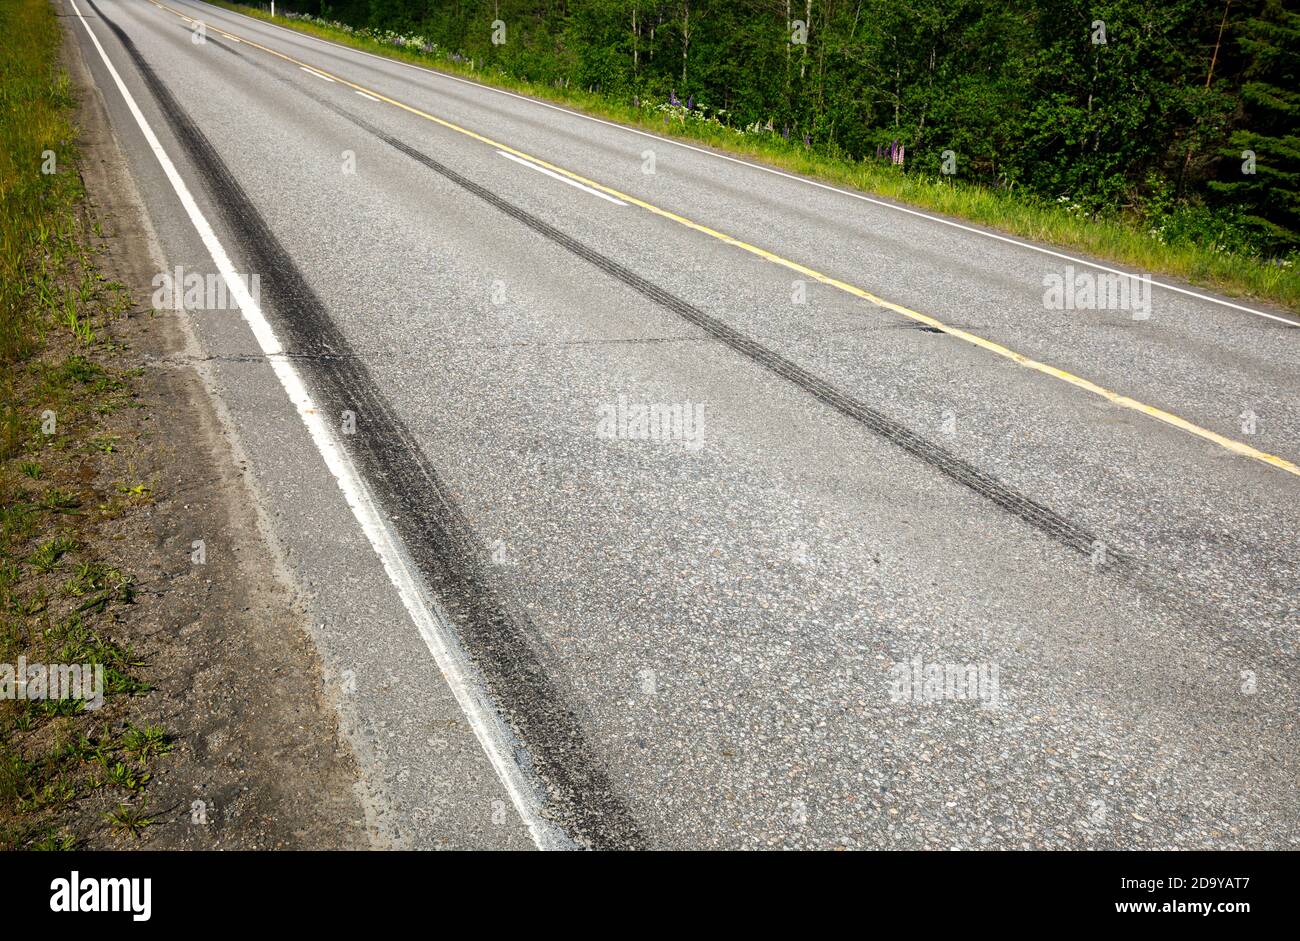 Marcature molto lunghe sulla superficie asfaltata in autostrada dopo una frenata brusca a Summer , Finlandia Foto Stock